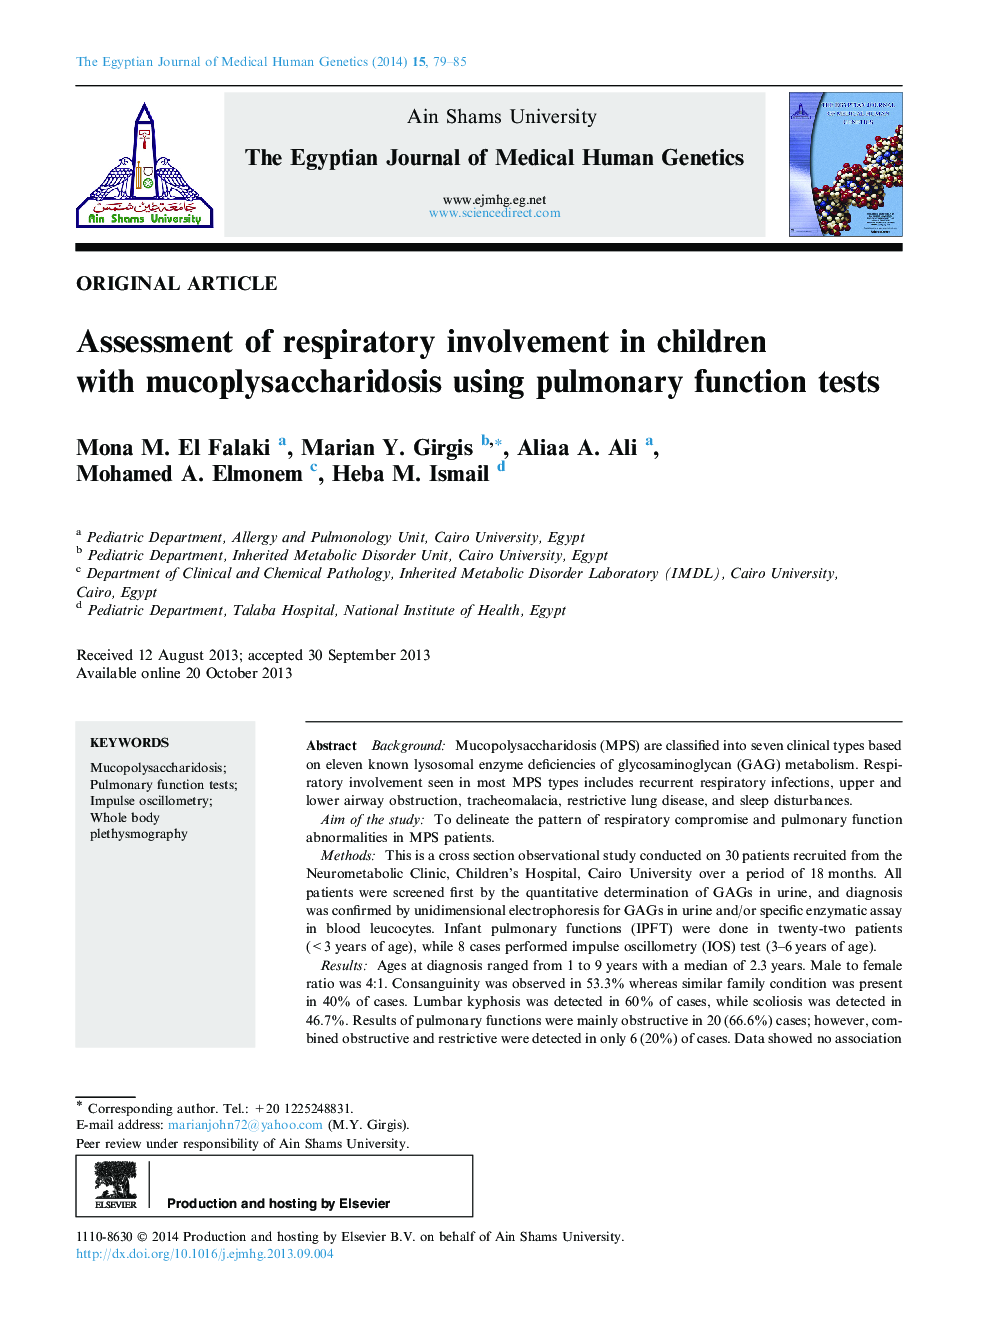 بررسی میزان تنفس در کودکان مبتلا به موکوپلیساکاریدوز با استفاده از تست های عملکرد ریوی 